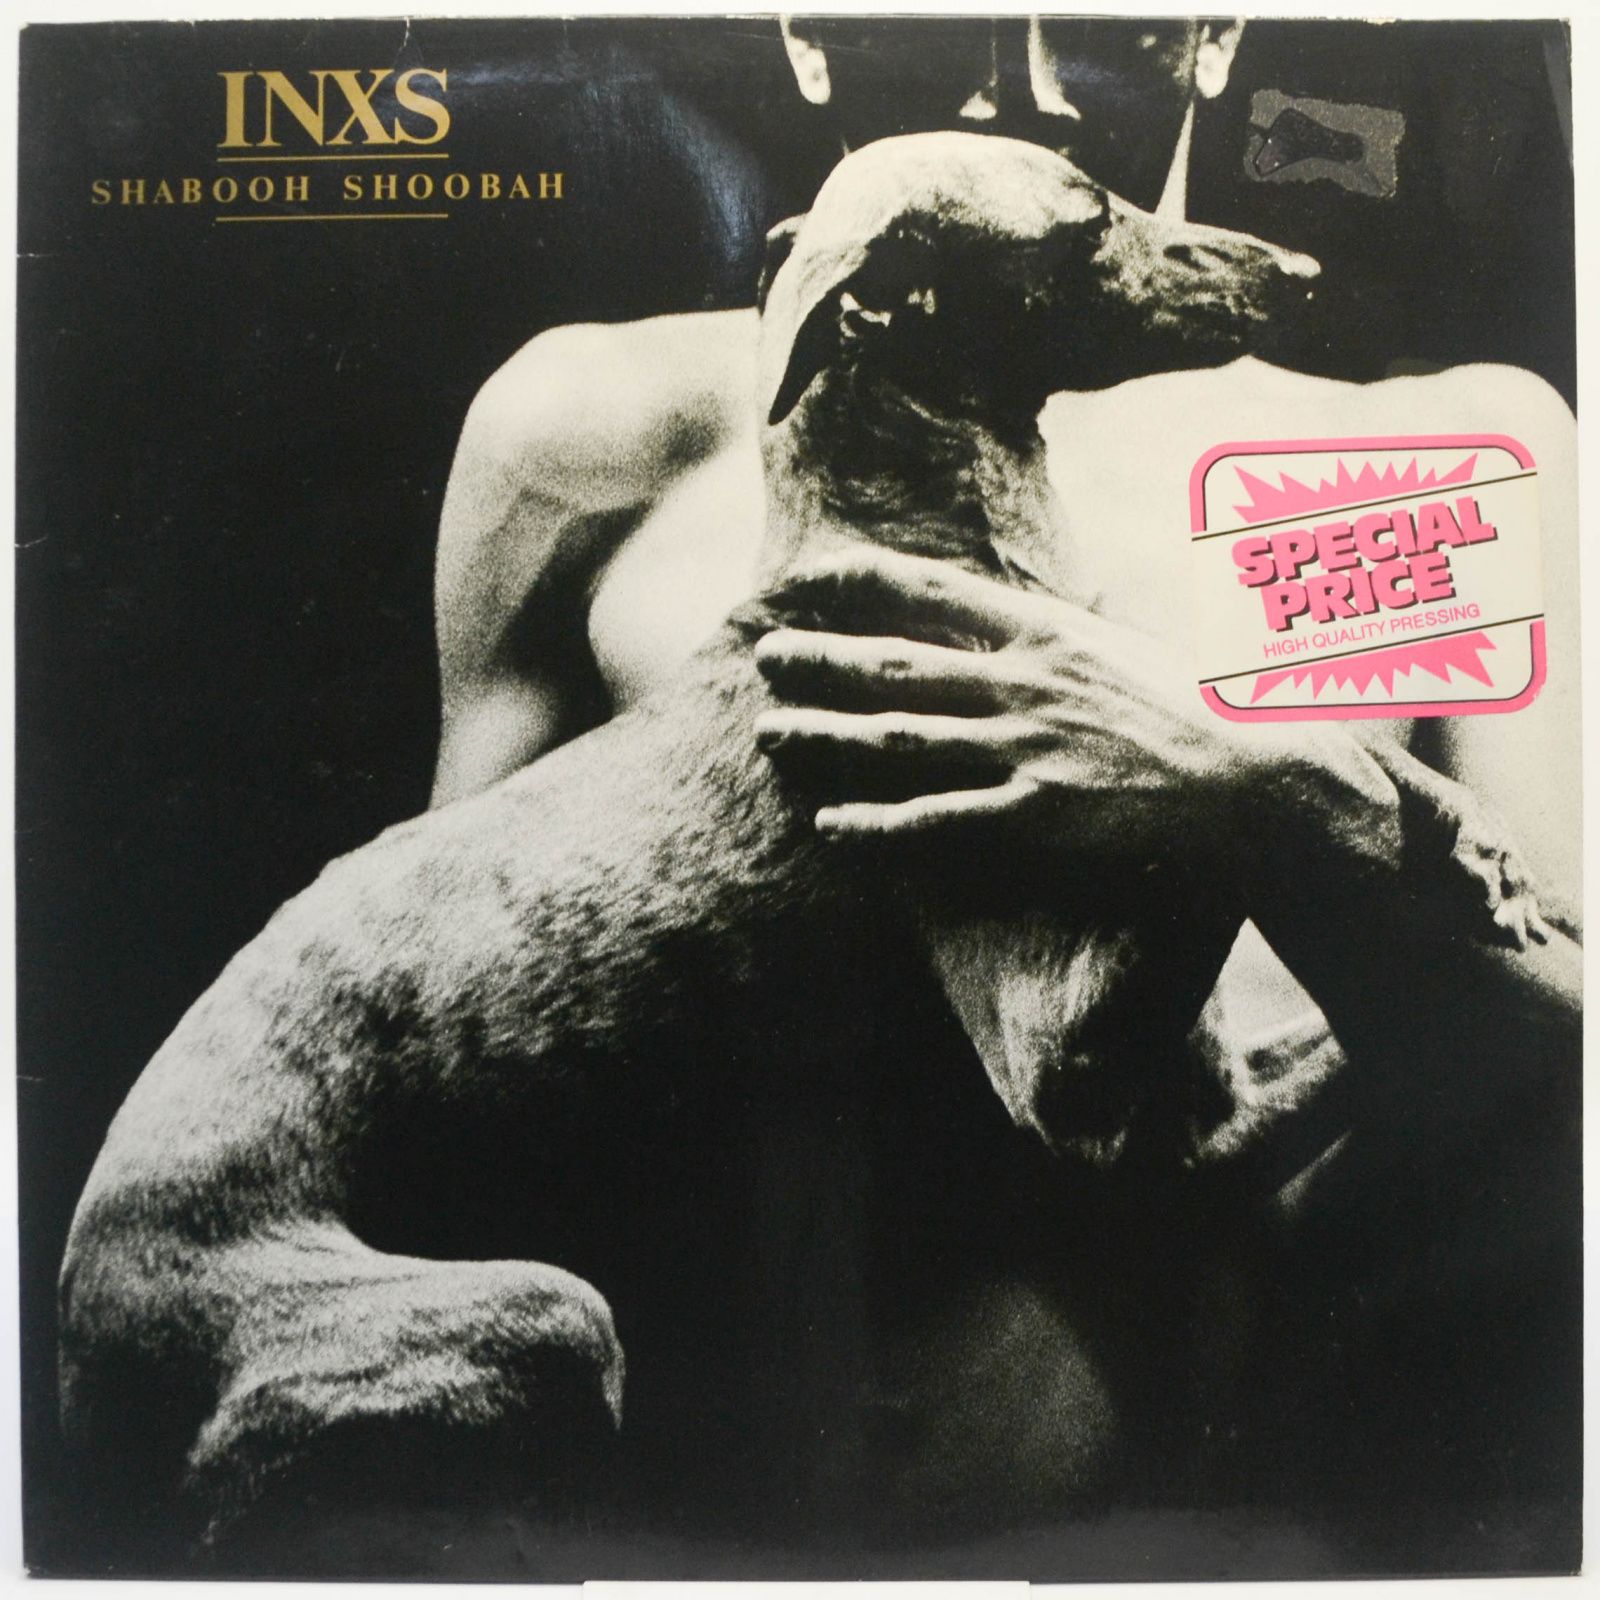 INXS — Shabooh Shoobah, 1983